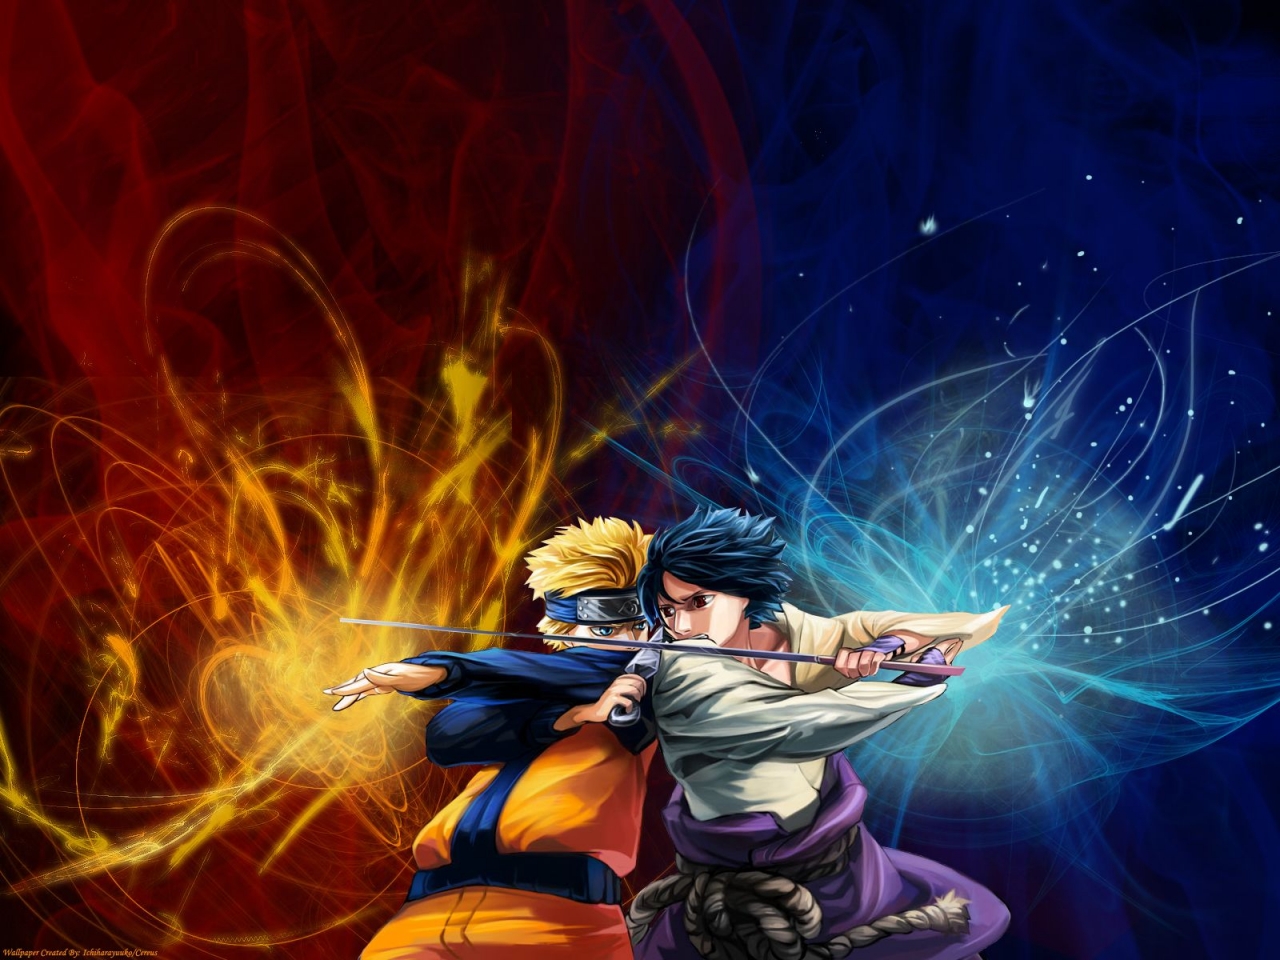 WallpapersKu: Naruto vs Sasuke Wallpapers